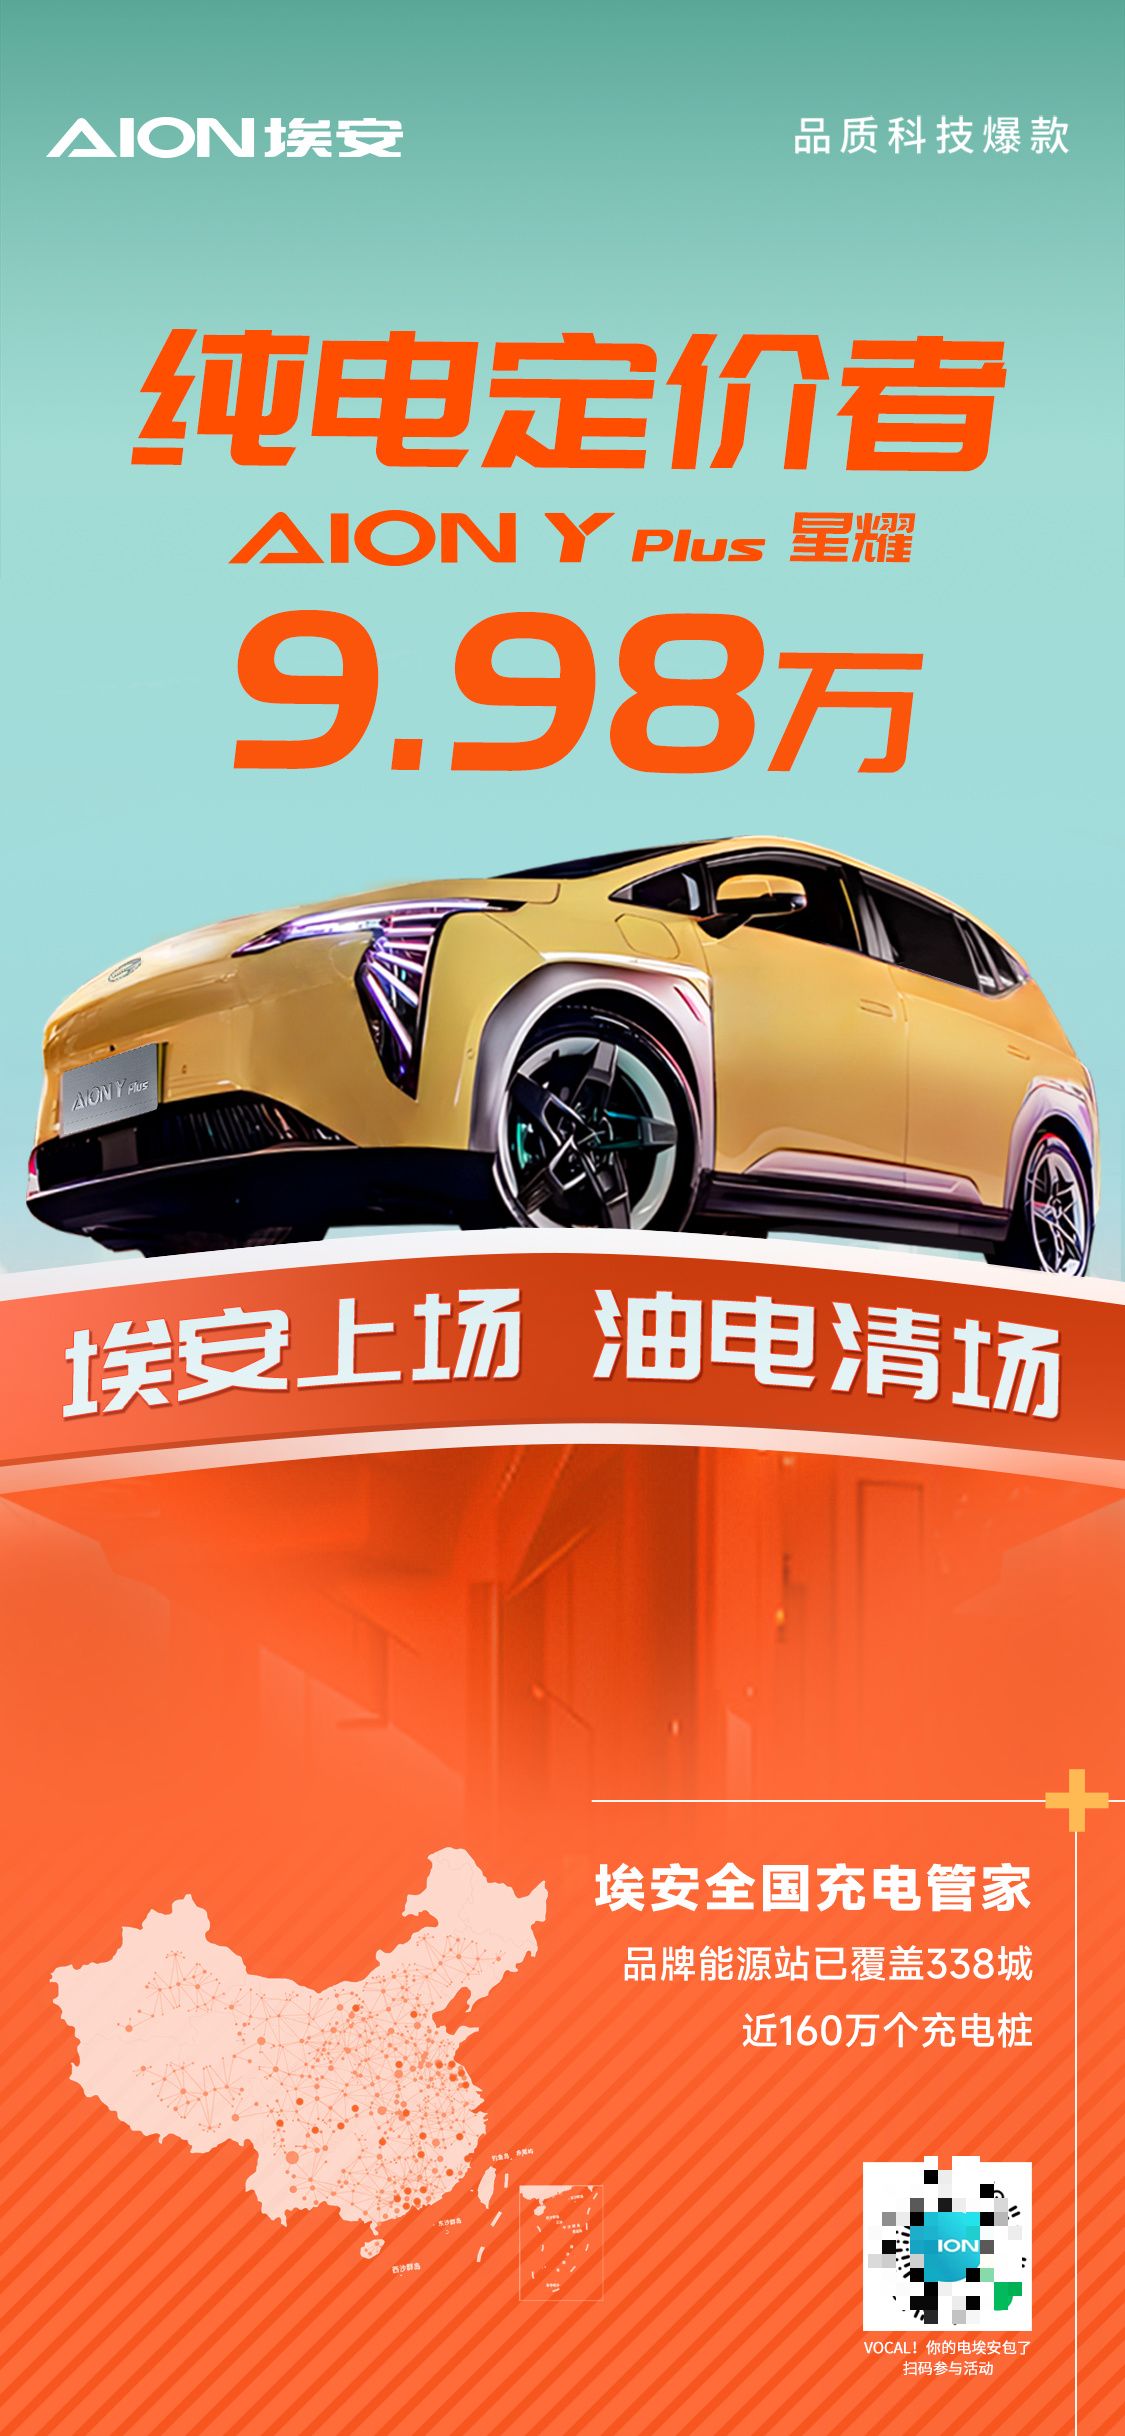 【愛車基地】9.98 萬元，廣汽埃安推出 AION Y Plus 星耀版車型